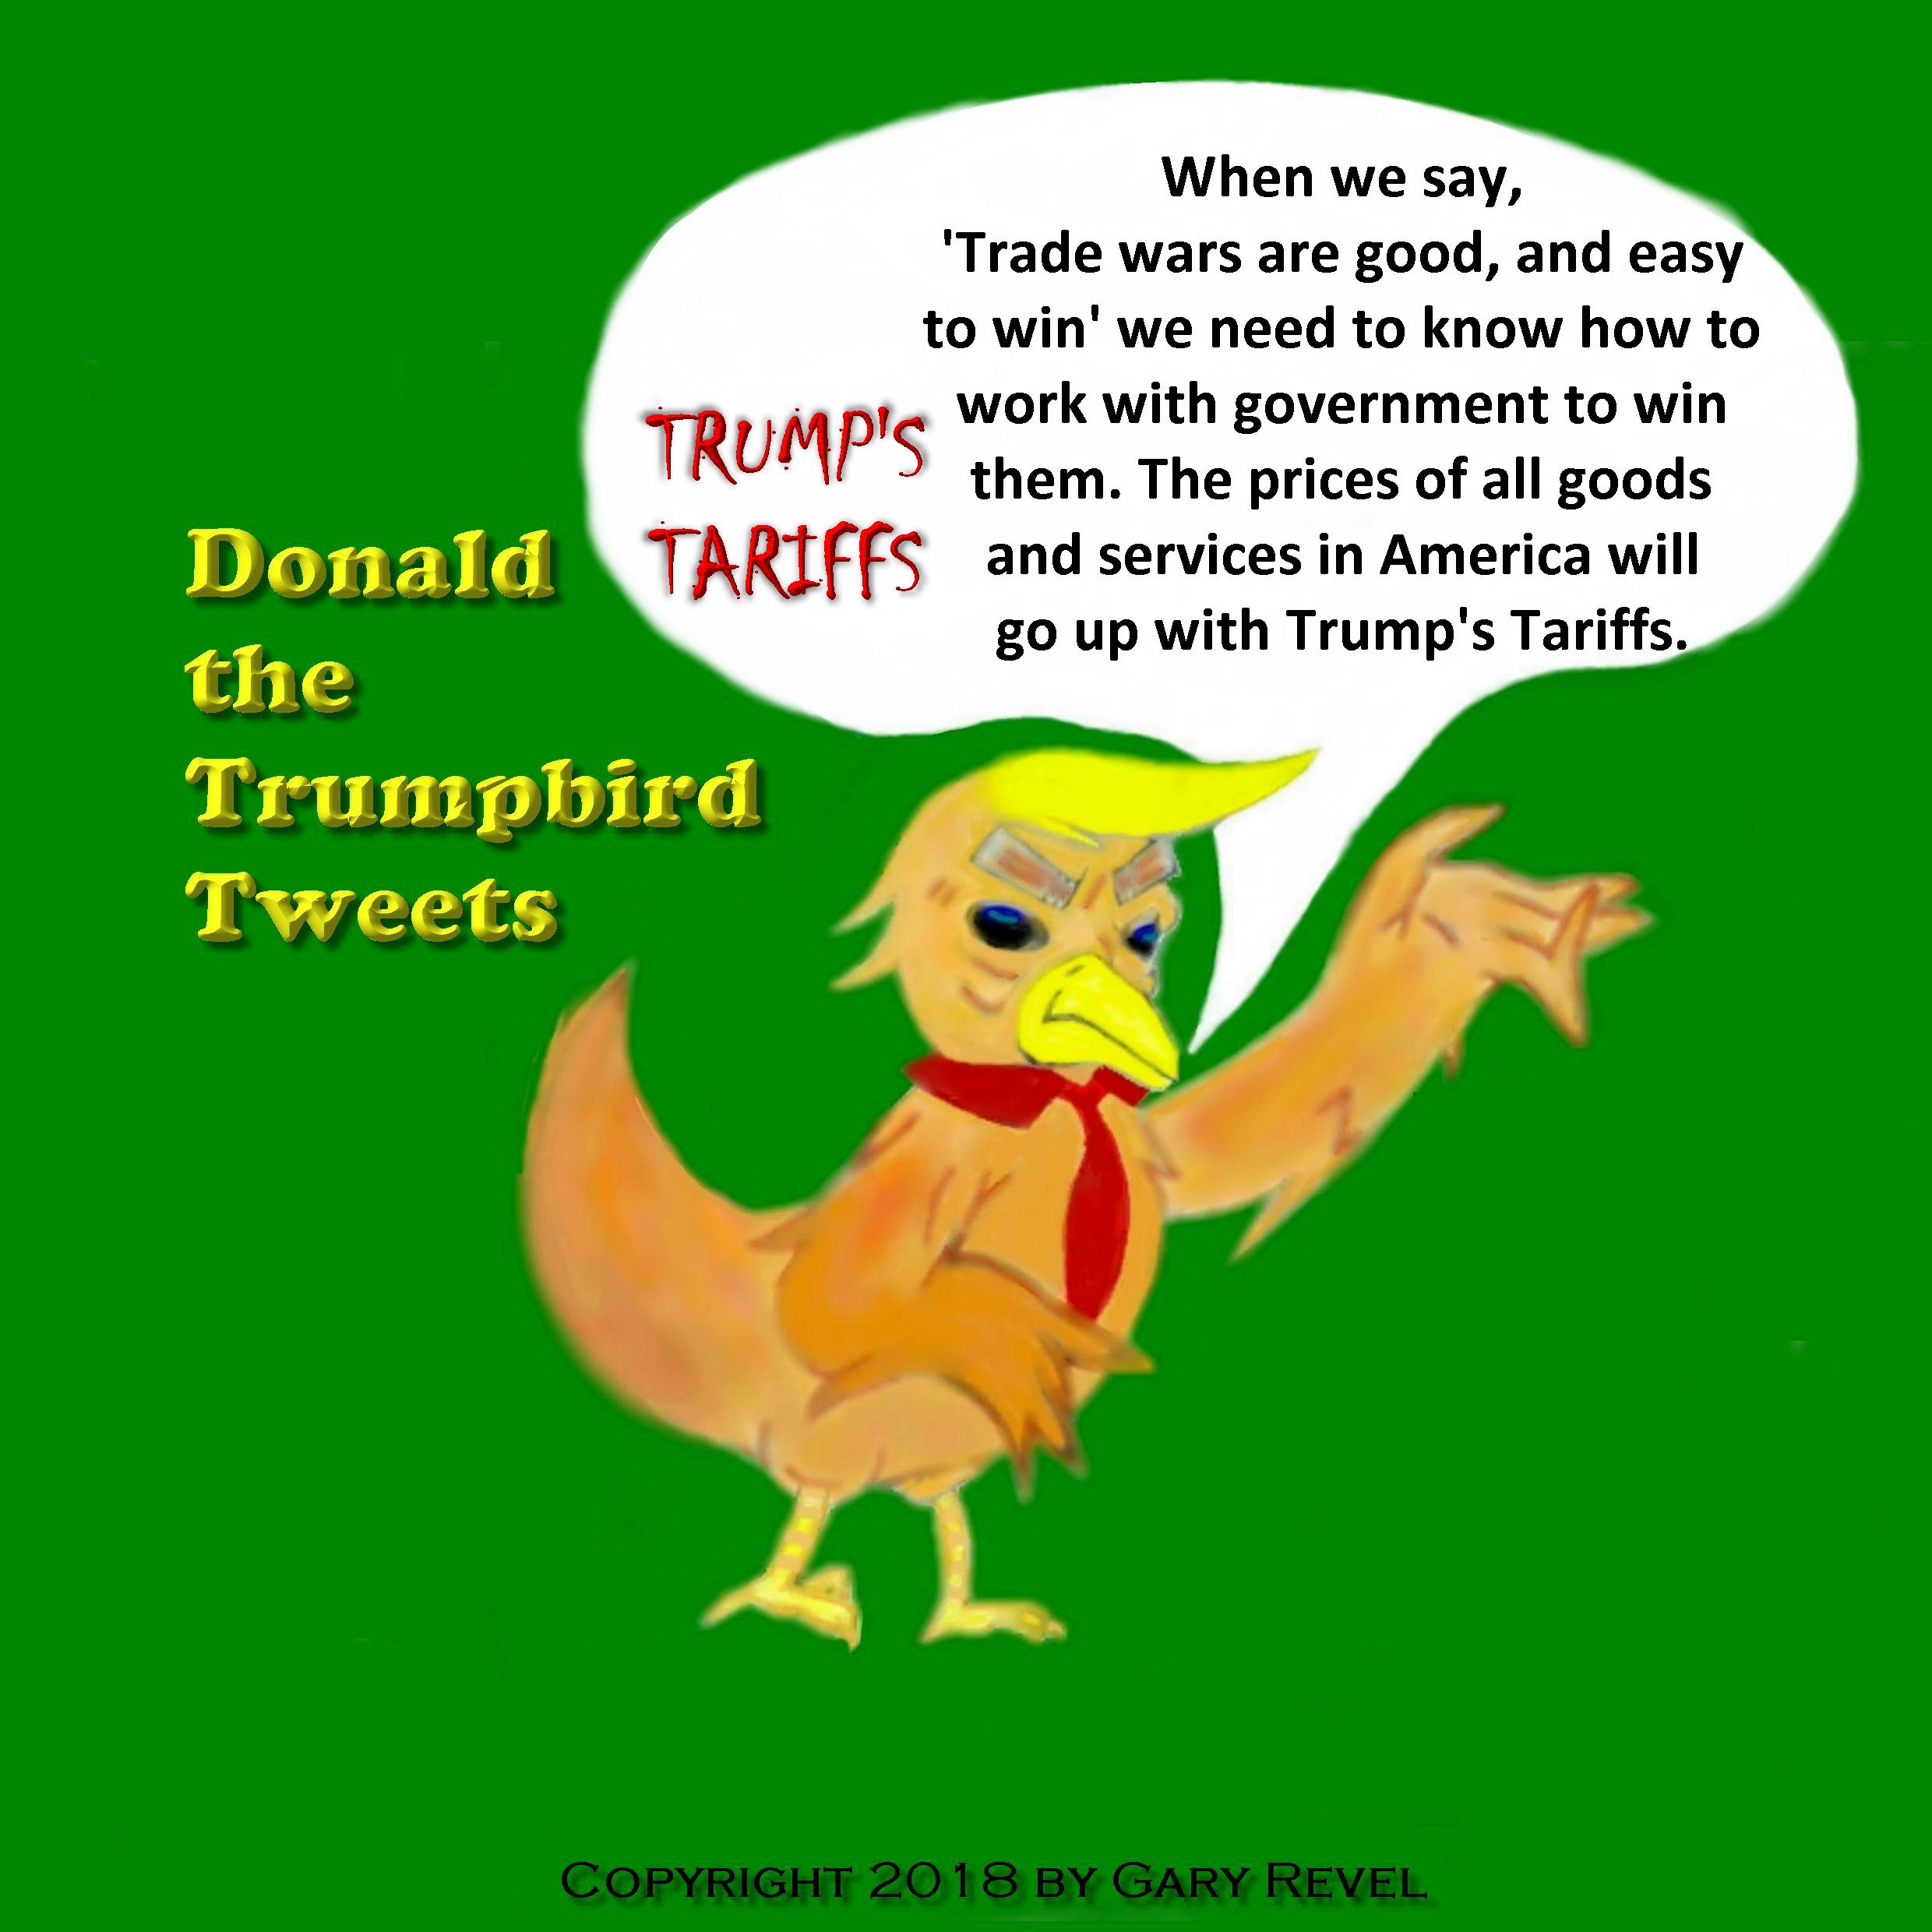 Donald the Trumpbird tweets Trump's Tariffs